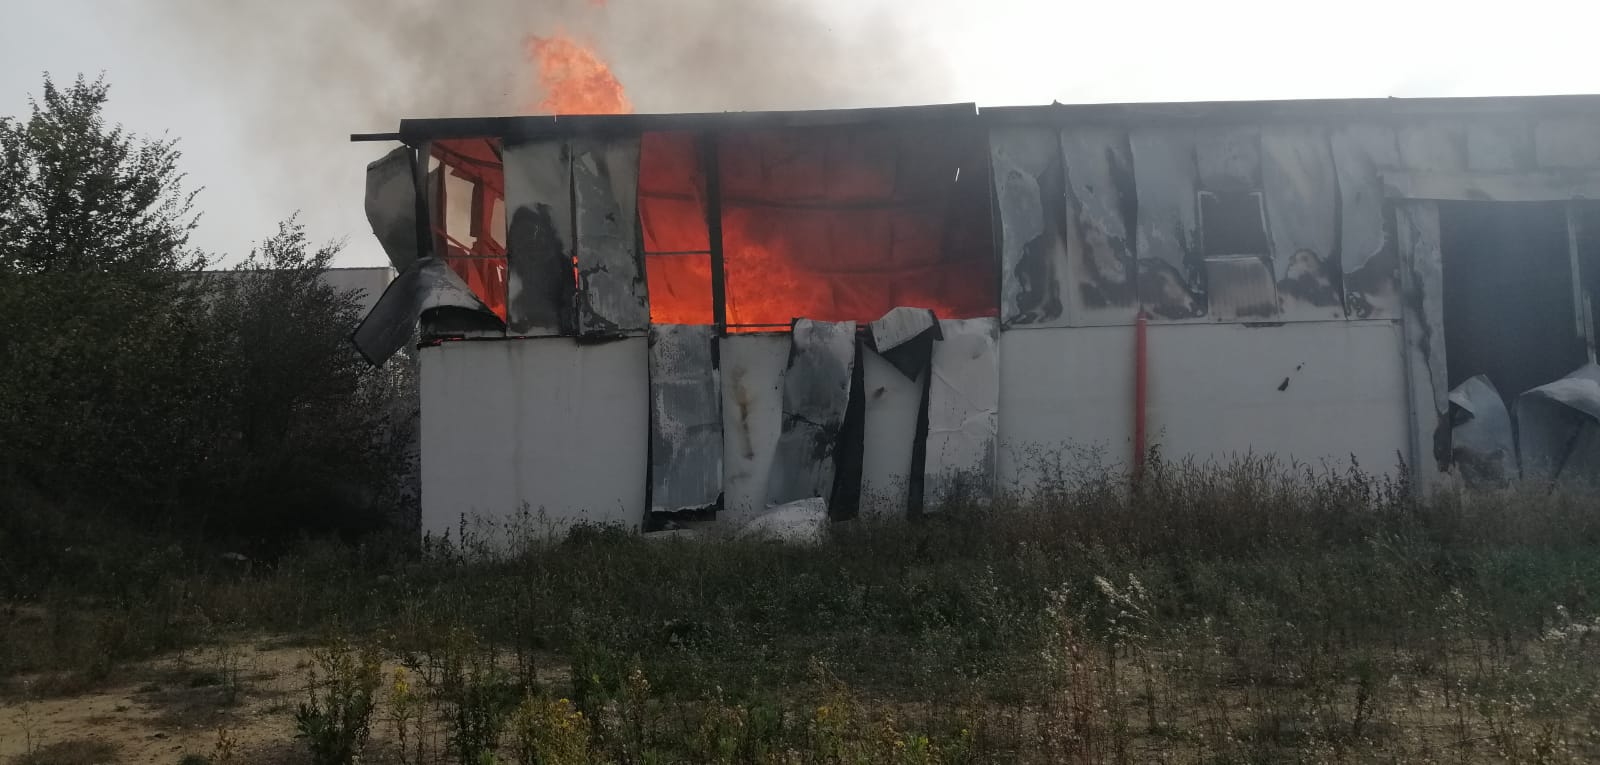 Incendio a San Salvatore Telesino, si attende rapporto dei Vigili del Fuoco